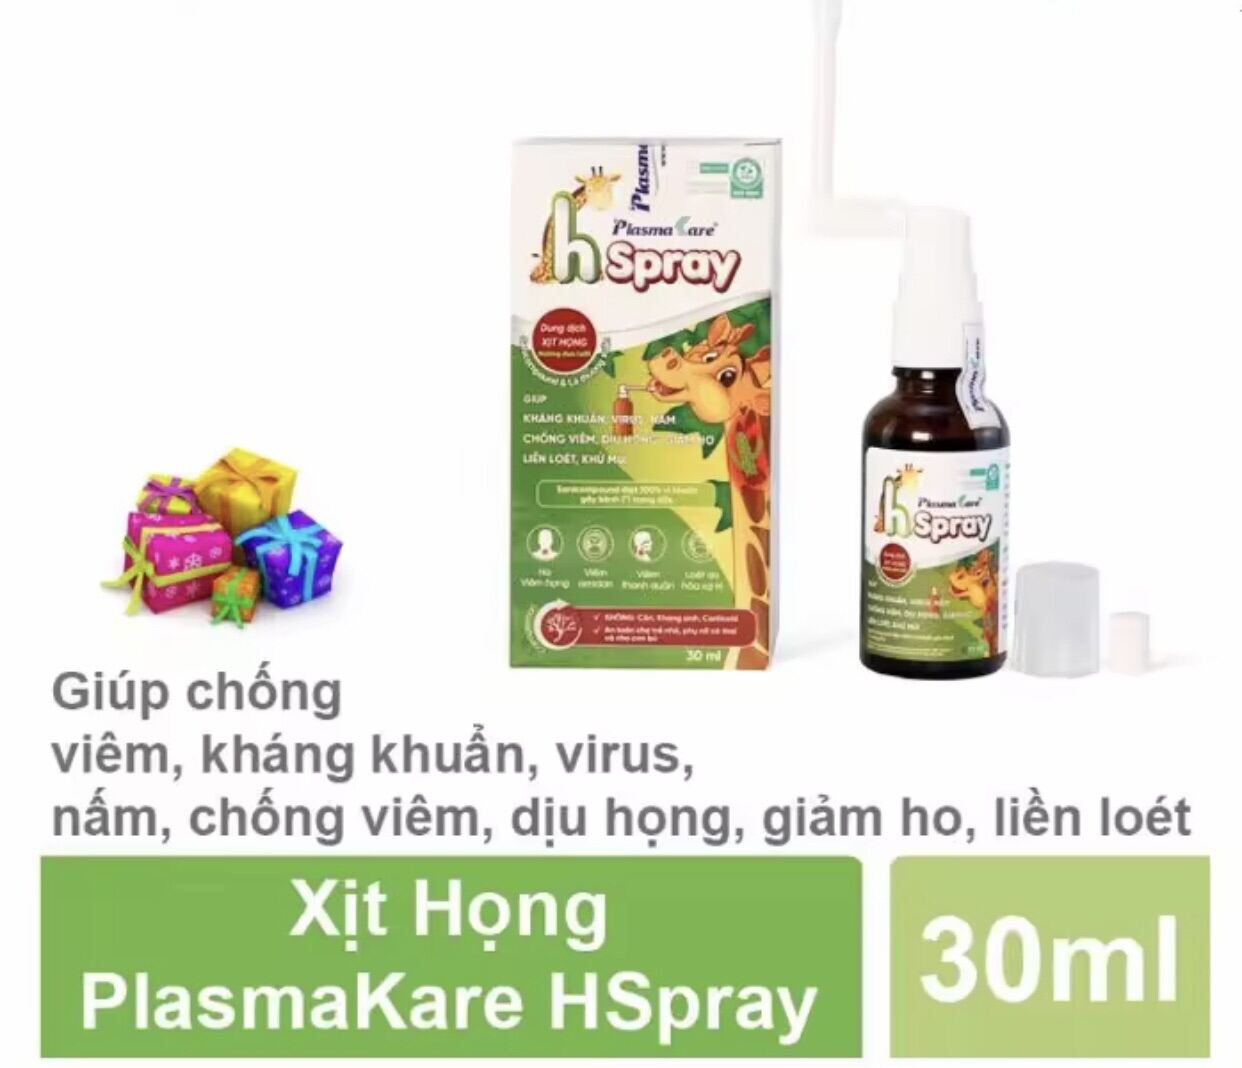 XỊT HỌNG PlasmaKare H-Spray 30ml - Giảm nhanh đau rát họng